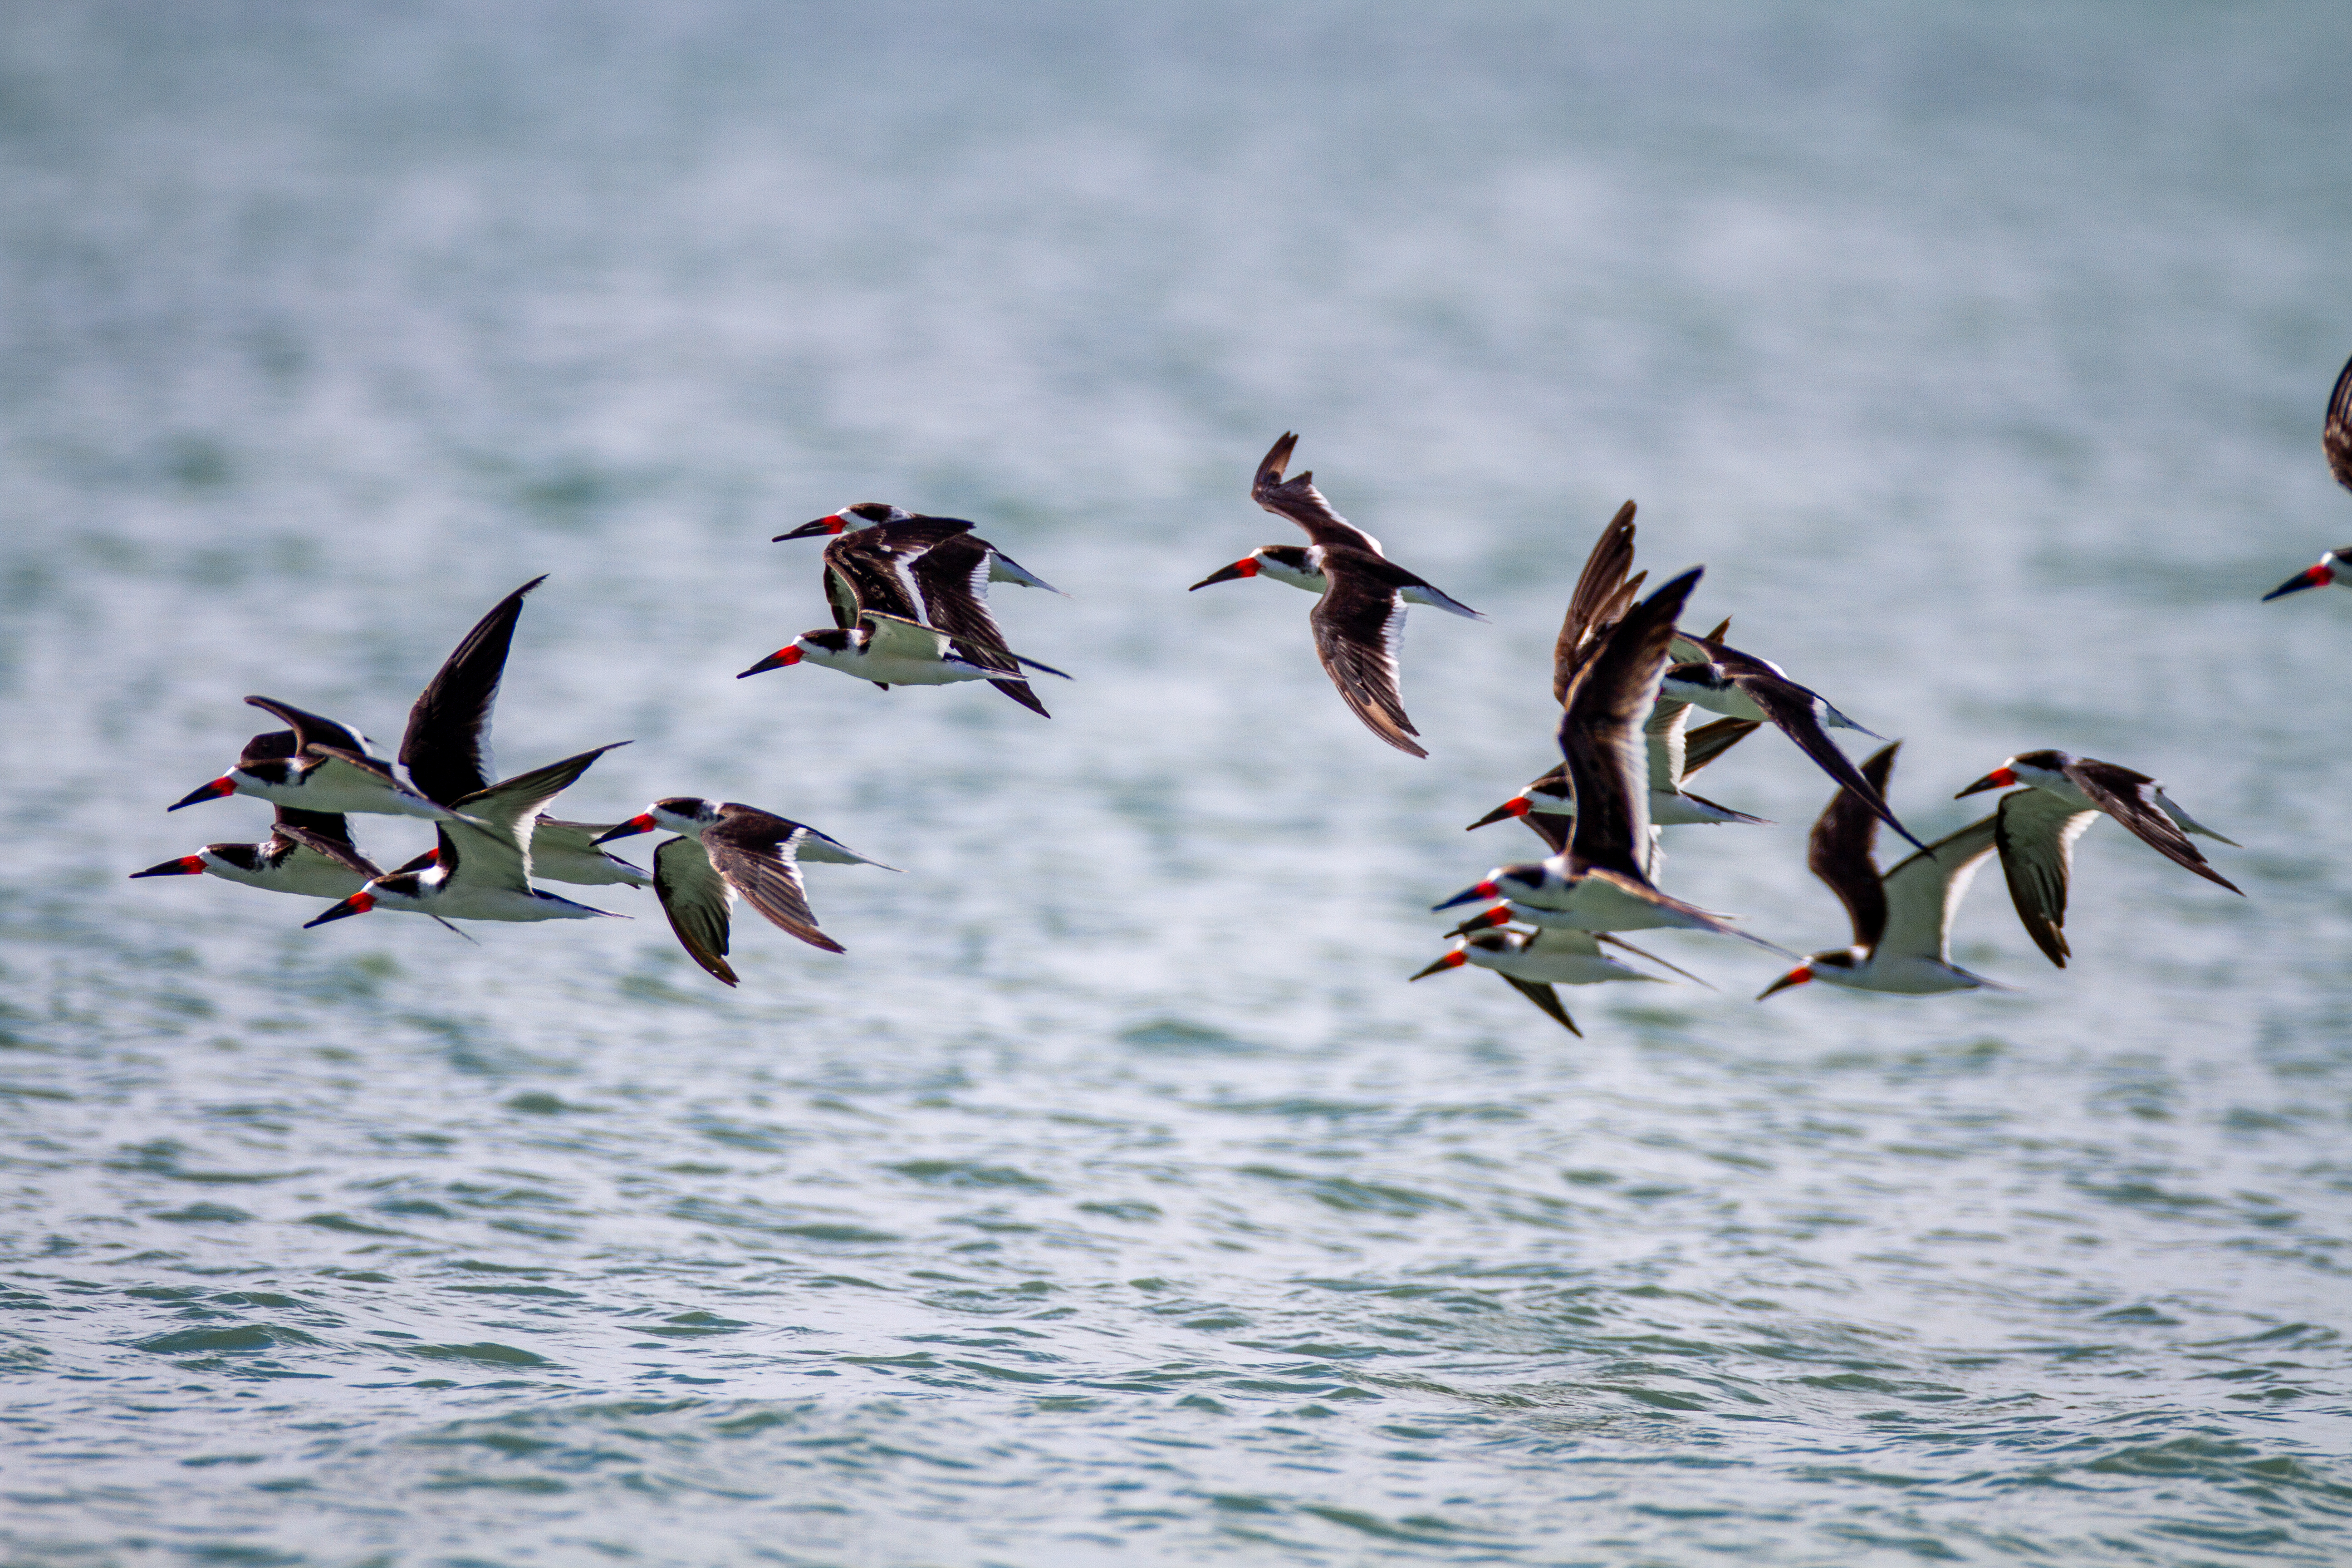 一群黑色掠鸟飞过水面